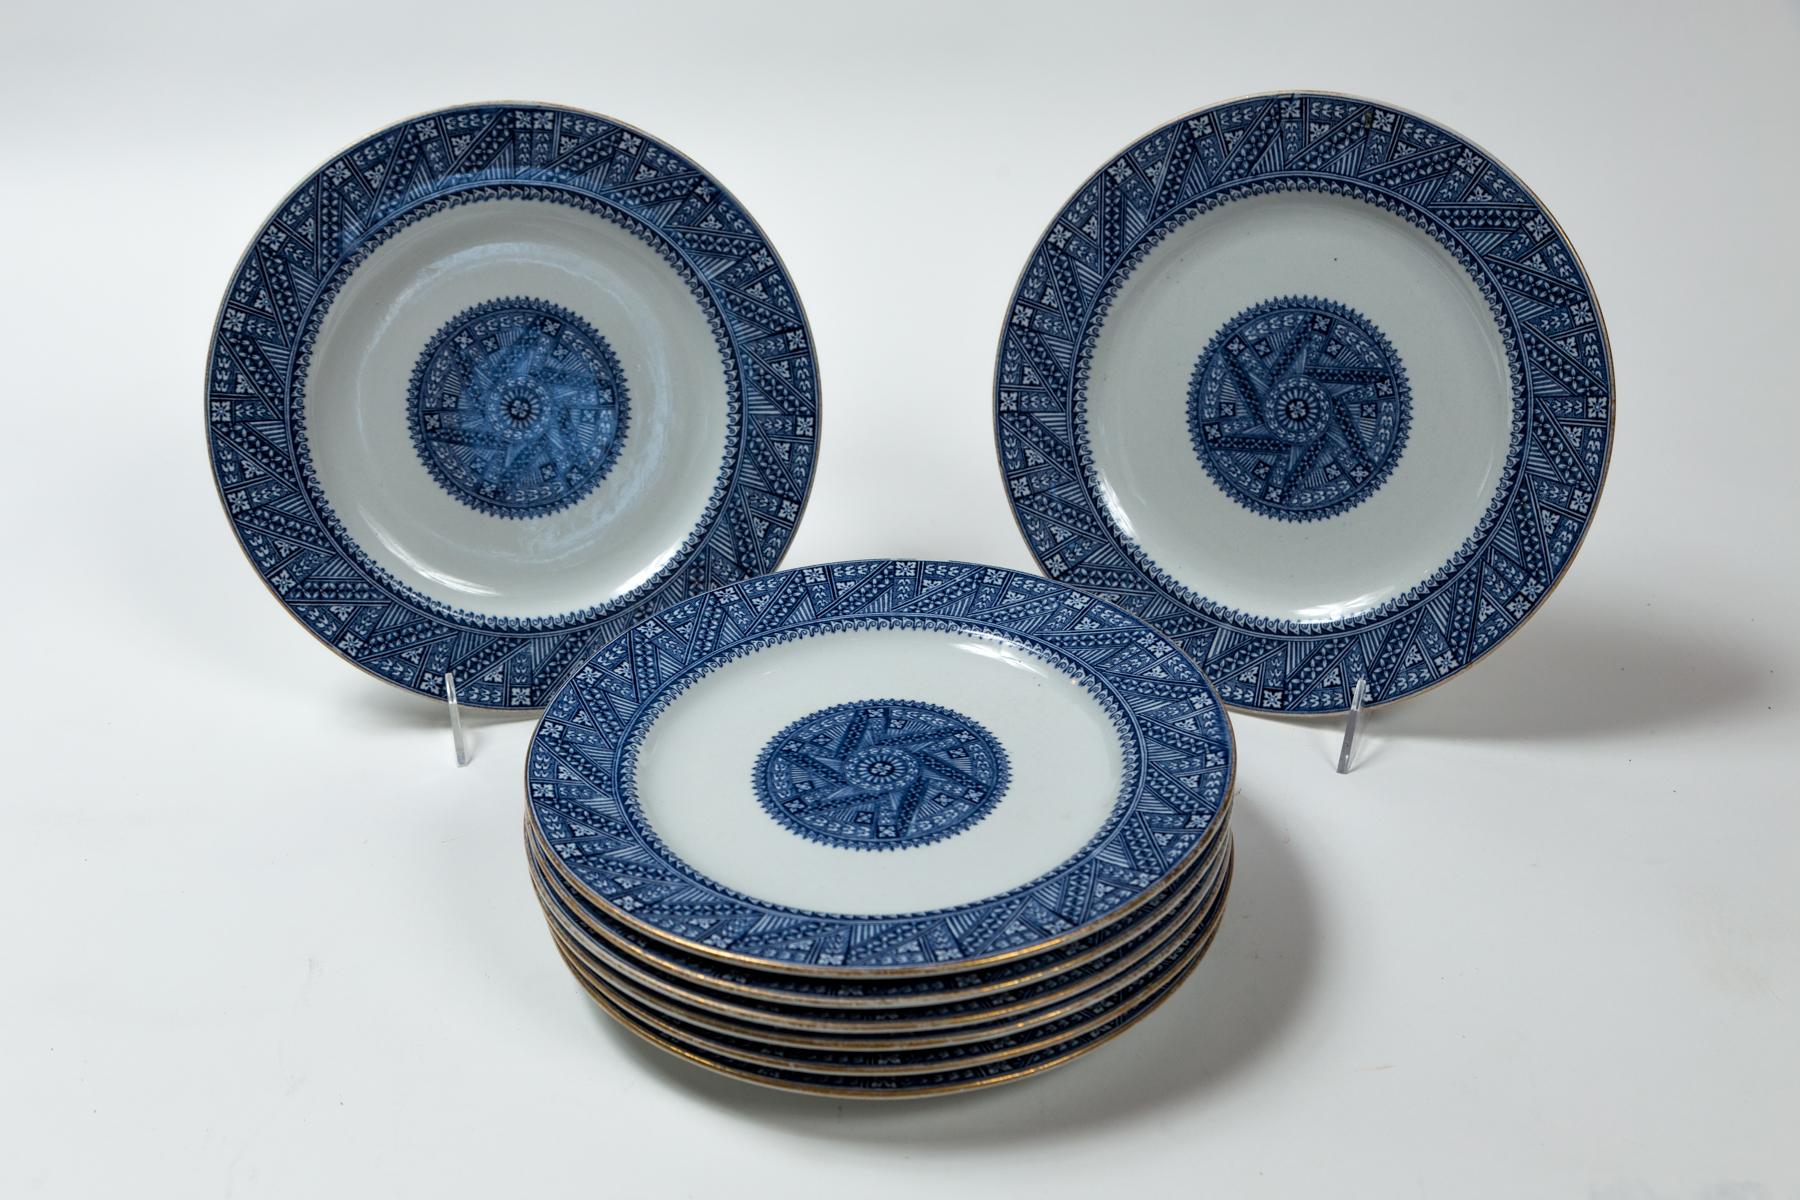 Ensemble de 8 assiettes de la période esthétique de Royal Worcester, 19e siècle, Angleterre. Un design Whiting dans un motif bleu et blanc, bordé d'un médaillon central. Royal Worcester et marques de date, ainsi que la marque de Gilman Collamore &